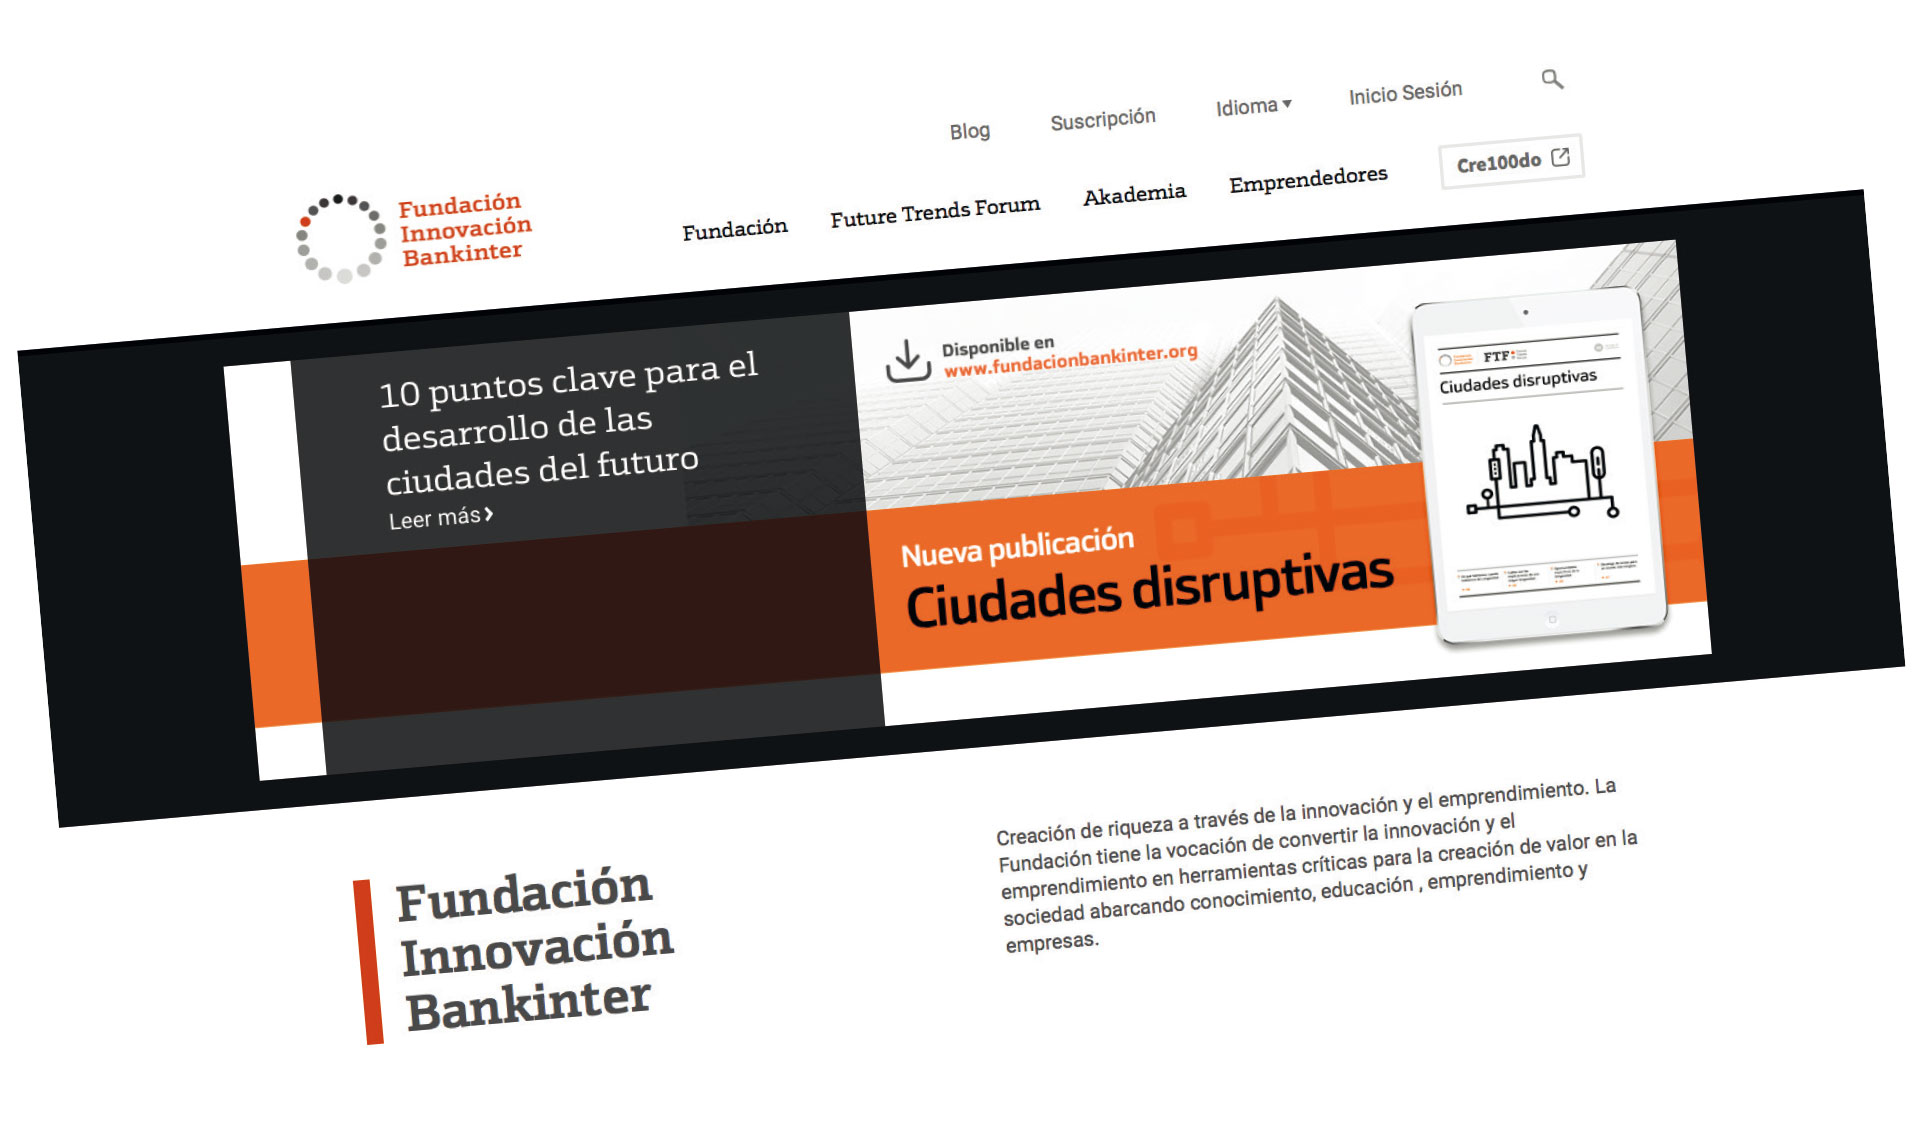 Bankinter Innovation Foundation